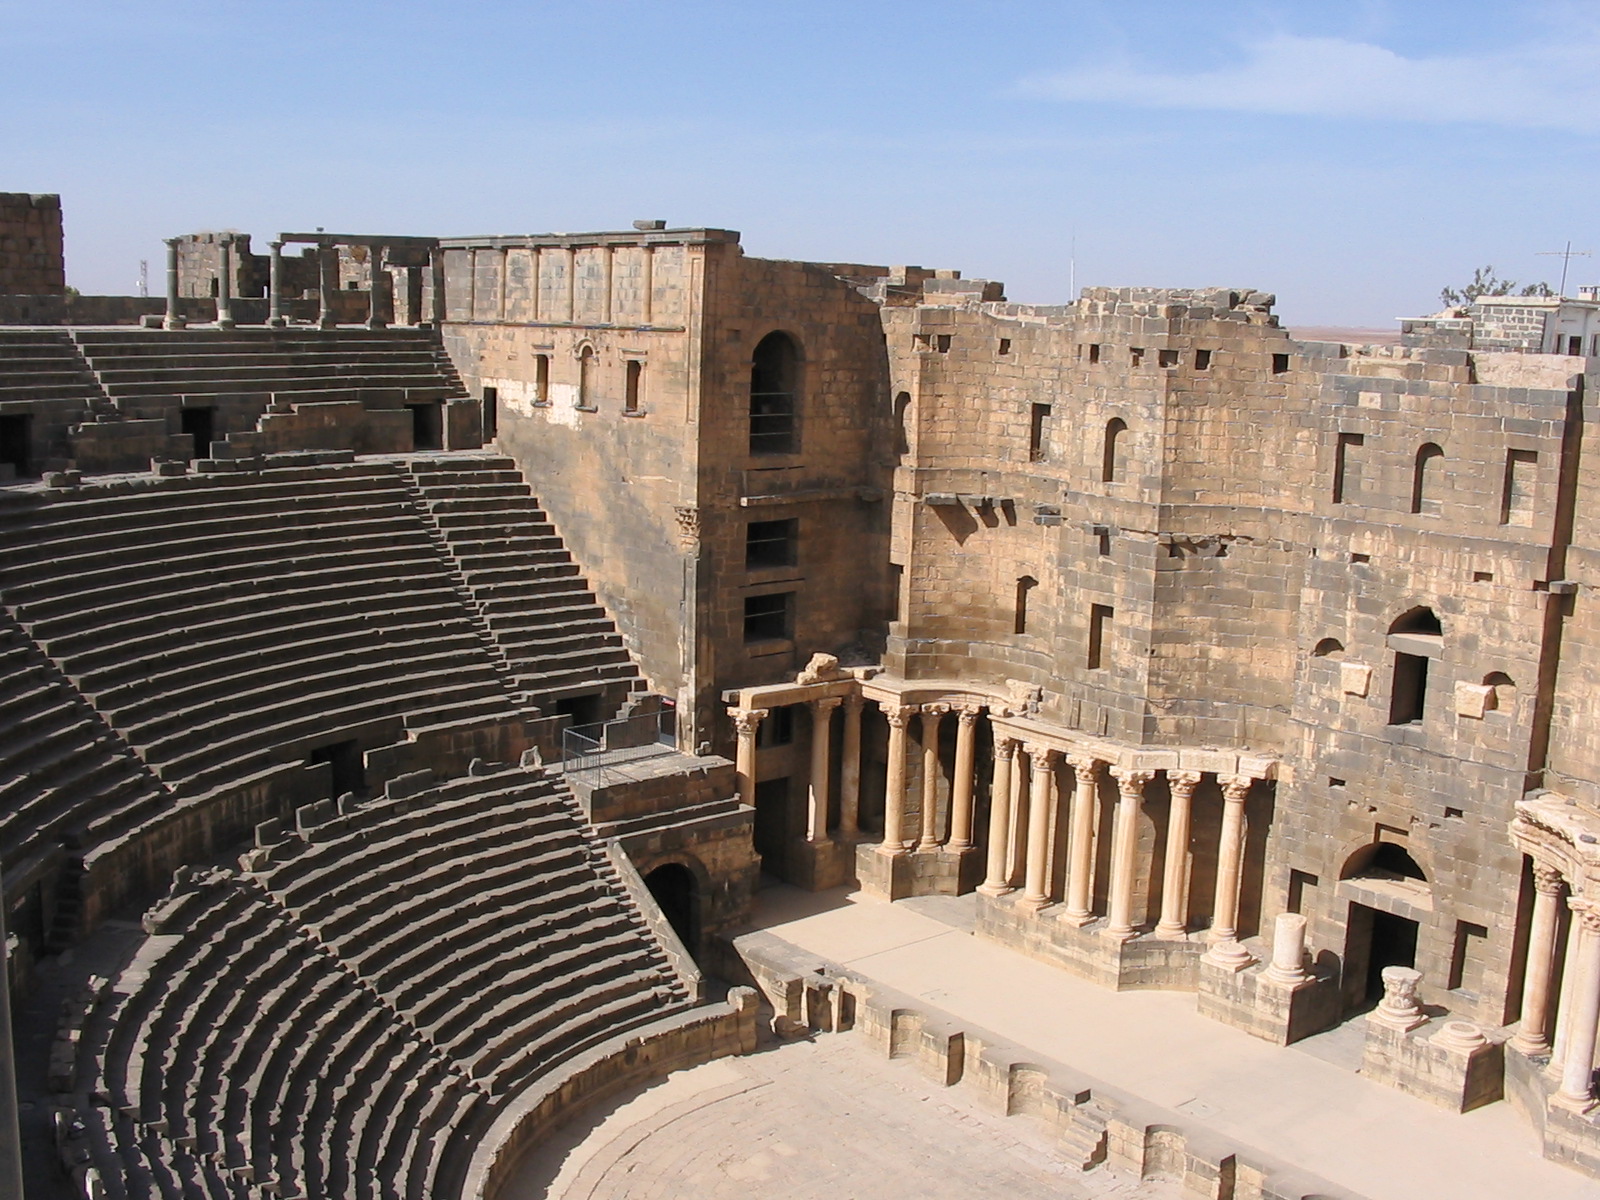 Roman Theatre at Bosra - Wikipedia